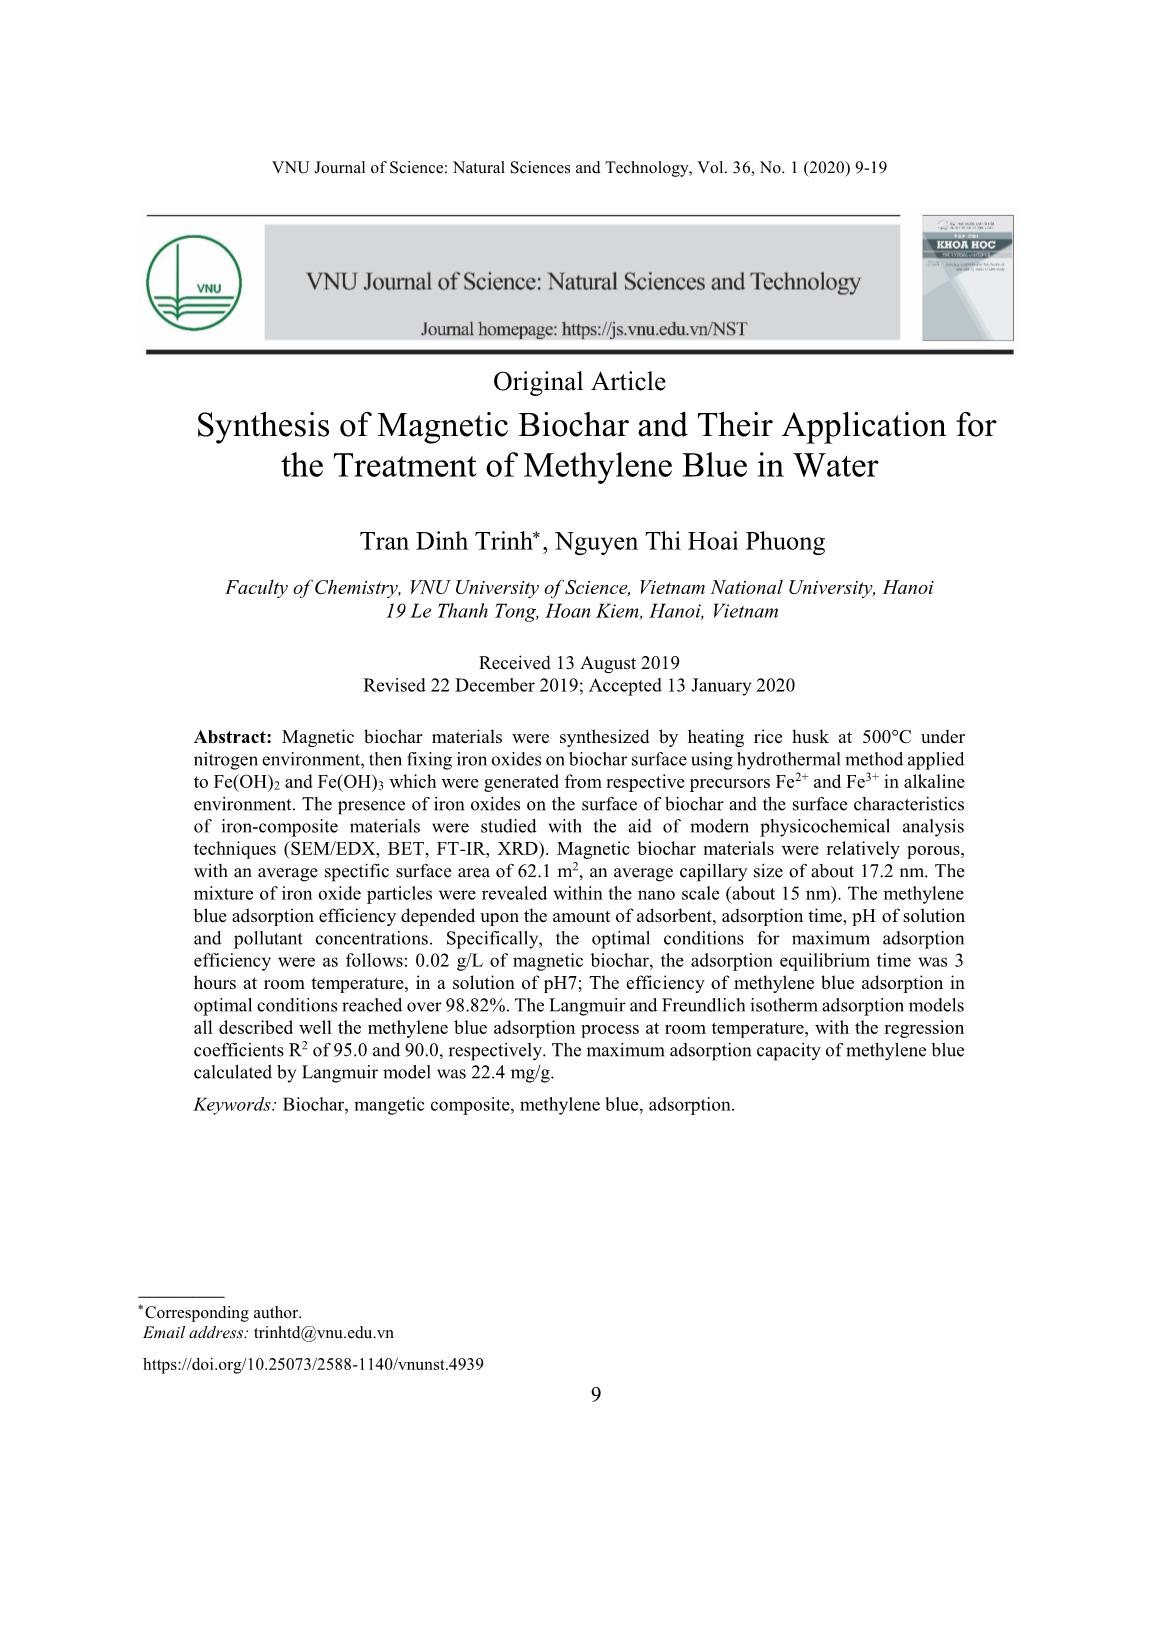 Nghiên cứu tổng hợp vật liệu biochar từ tính và ứng dụng để xử lý xanh methylen trong nước trang 1